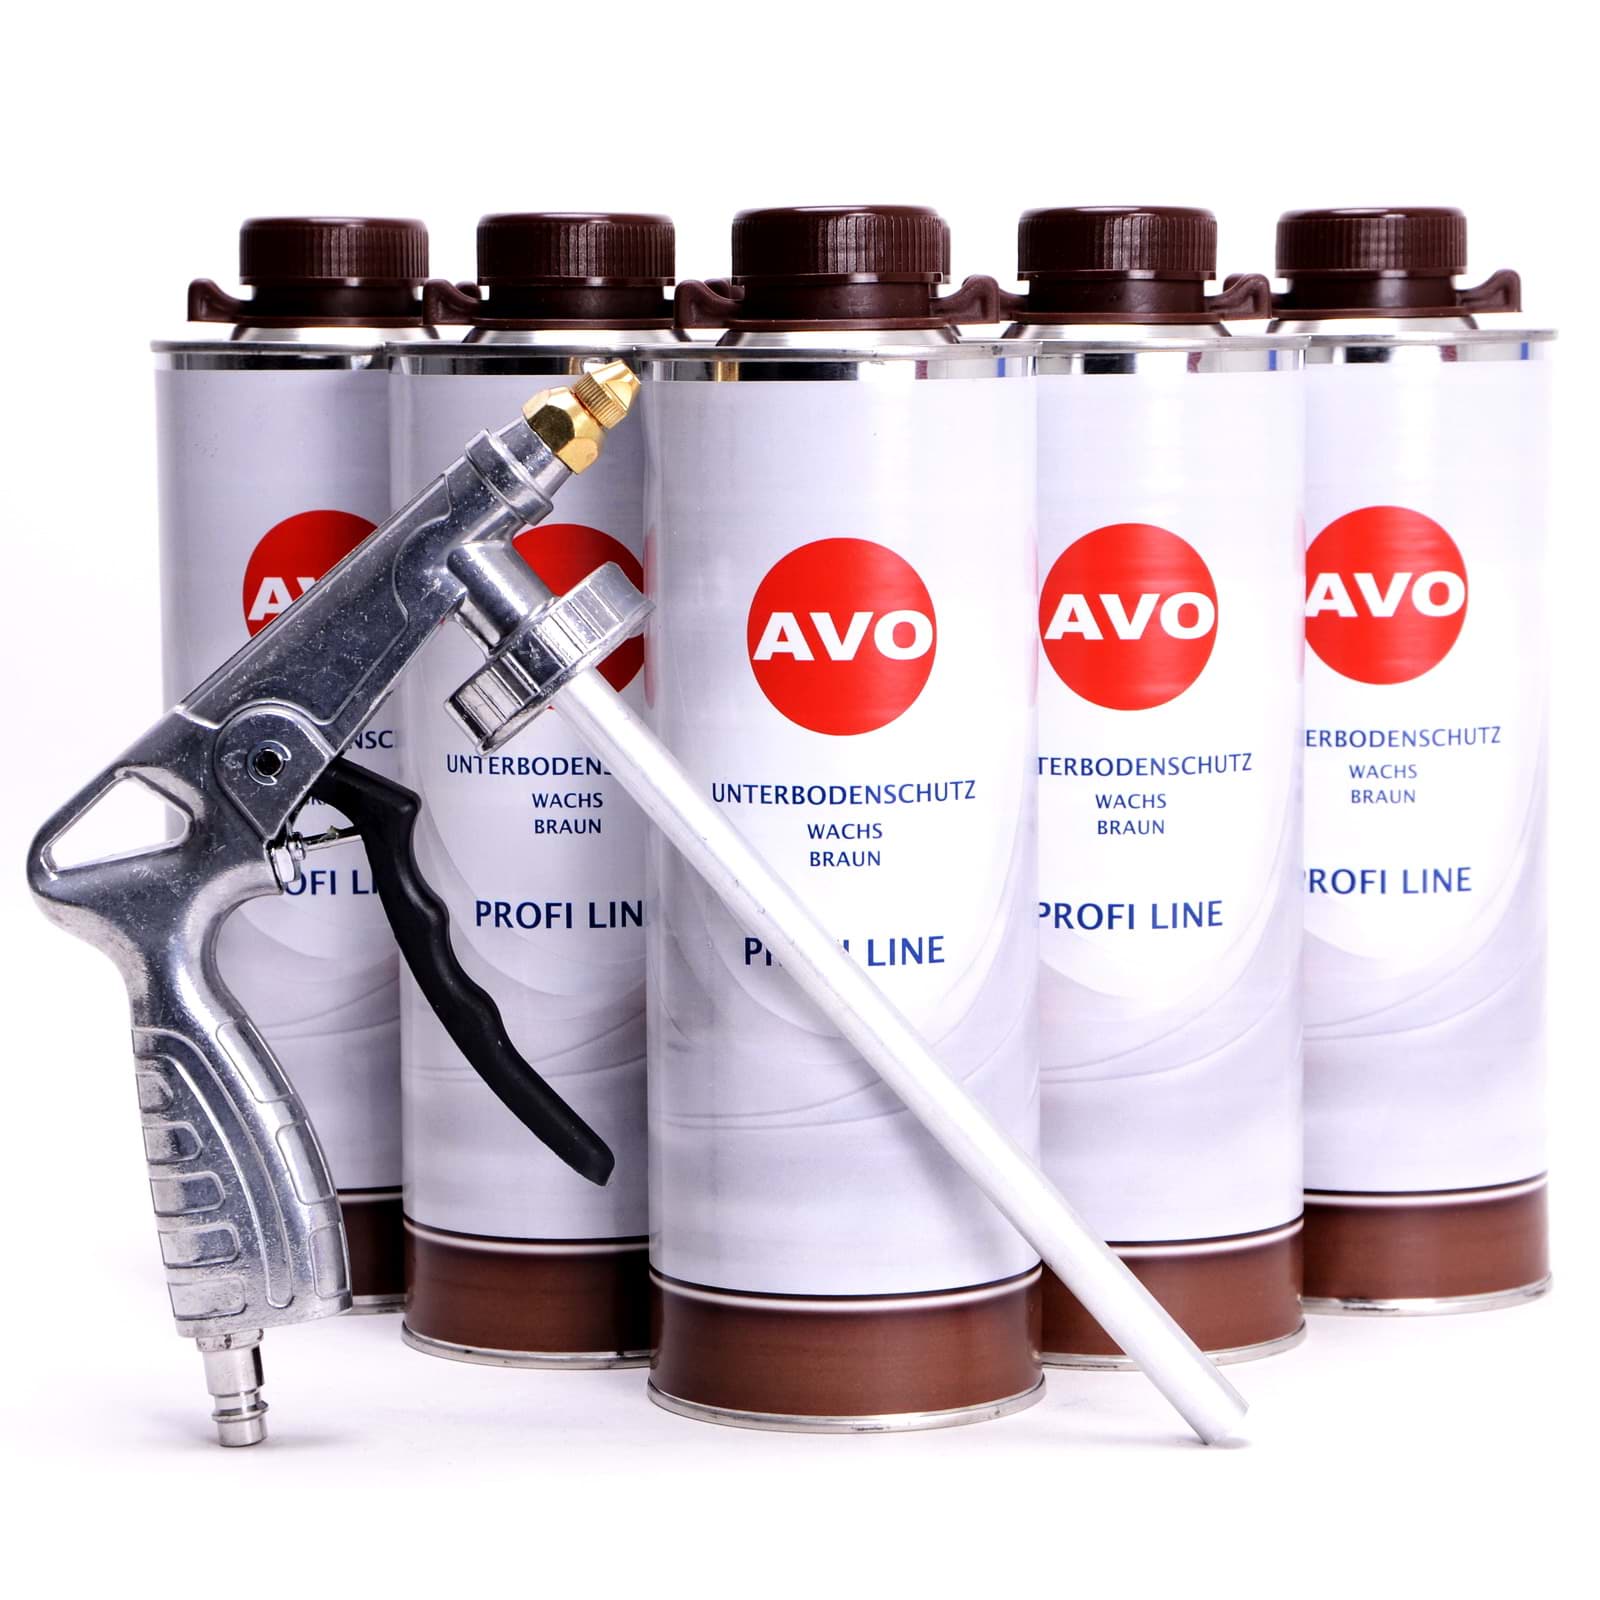 AVO 6 Liter Unterbodenschutz Wachs + UBS/HV Spritzpistole